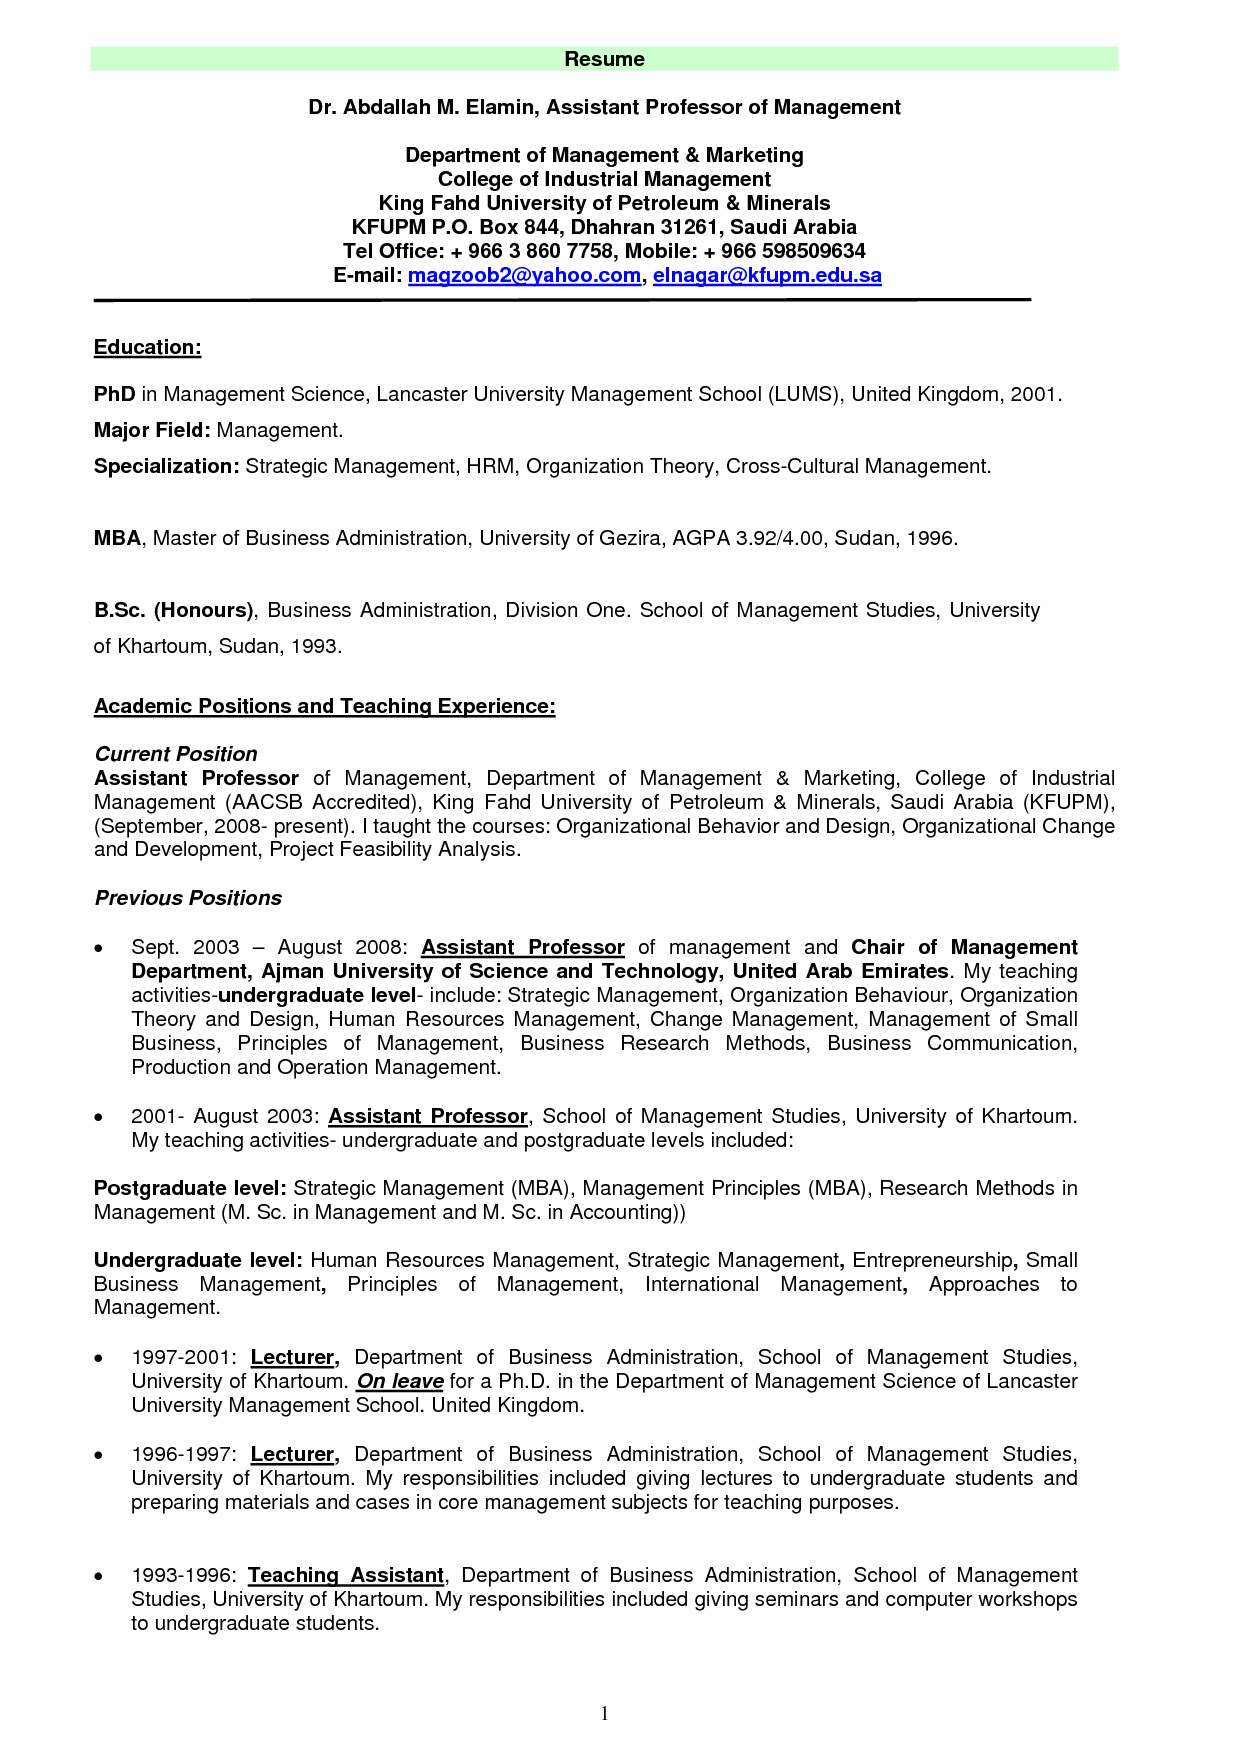 sample resume for adjunct professor position